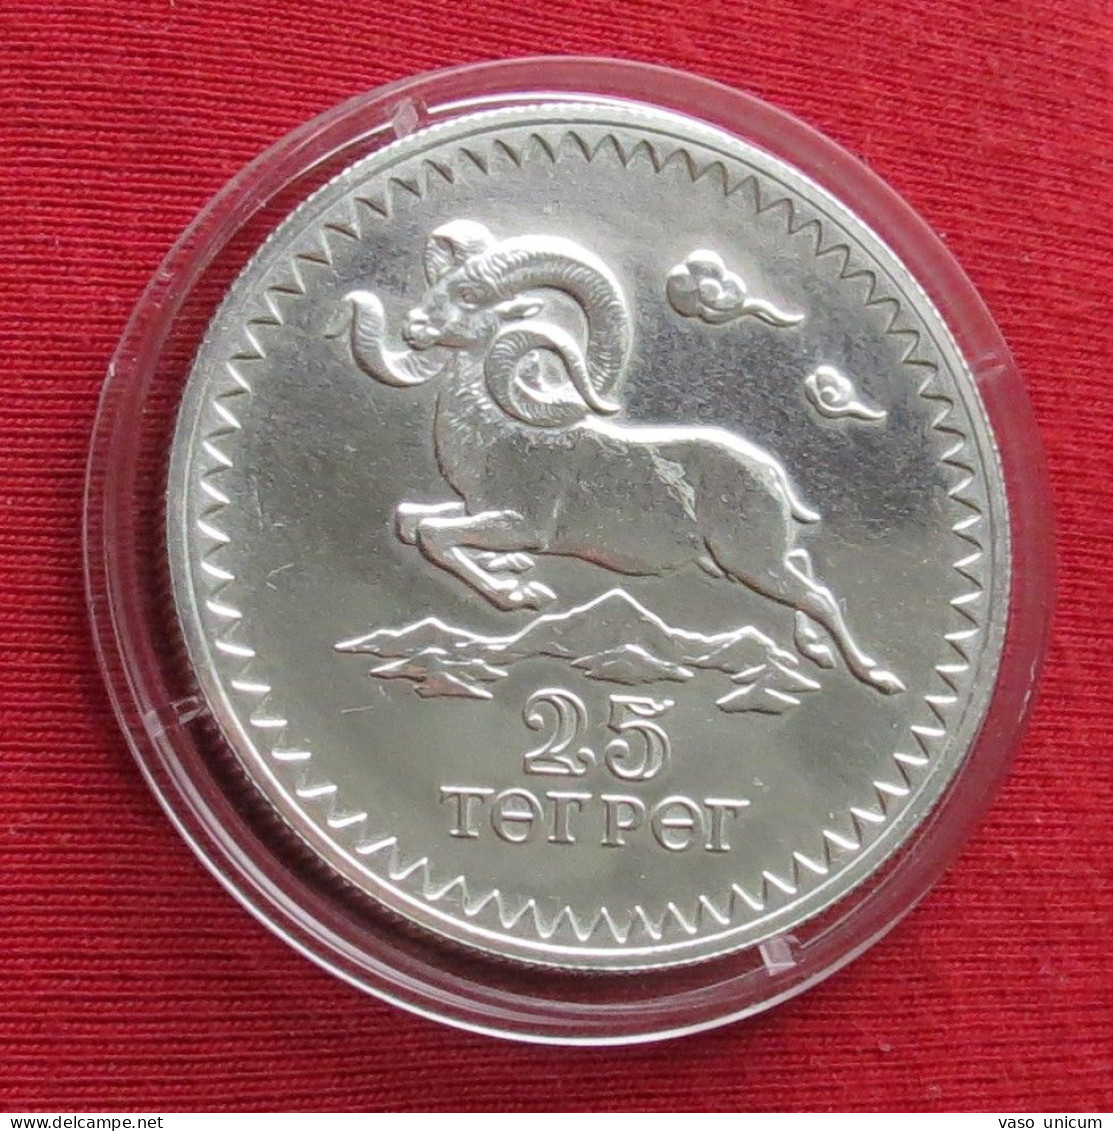 Mongolia 25 Togrog 1976 Argali Sheep  Minted 5348 Coins - Mongolia